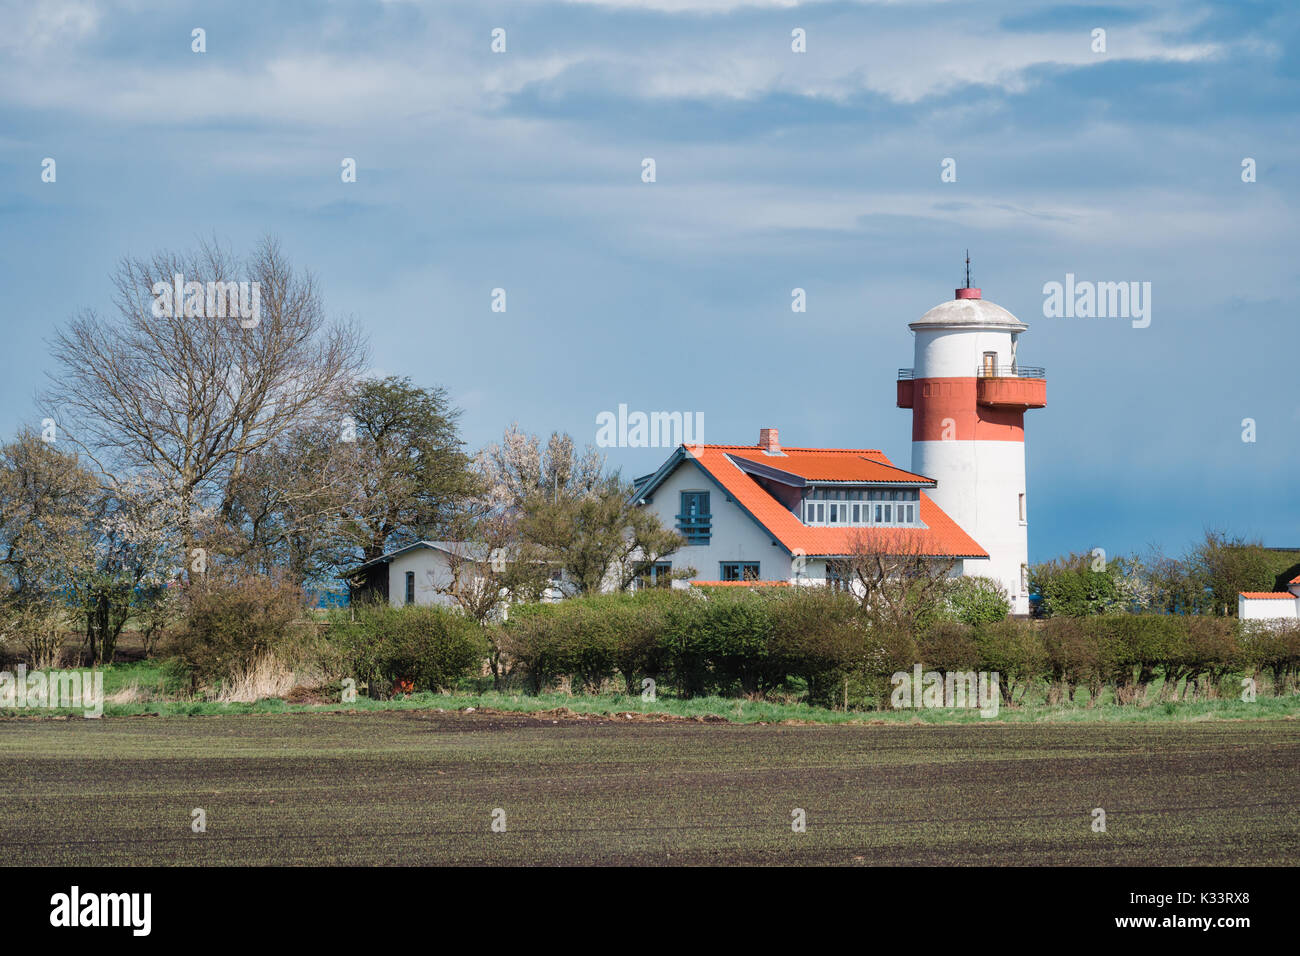 Lighthouse Hou Fyr on the island Langeland, Denmark Stock Photo